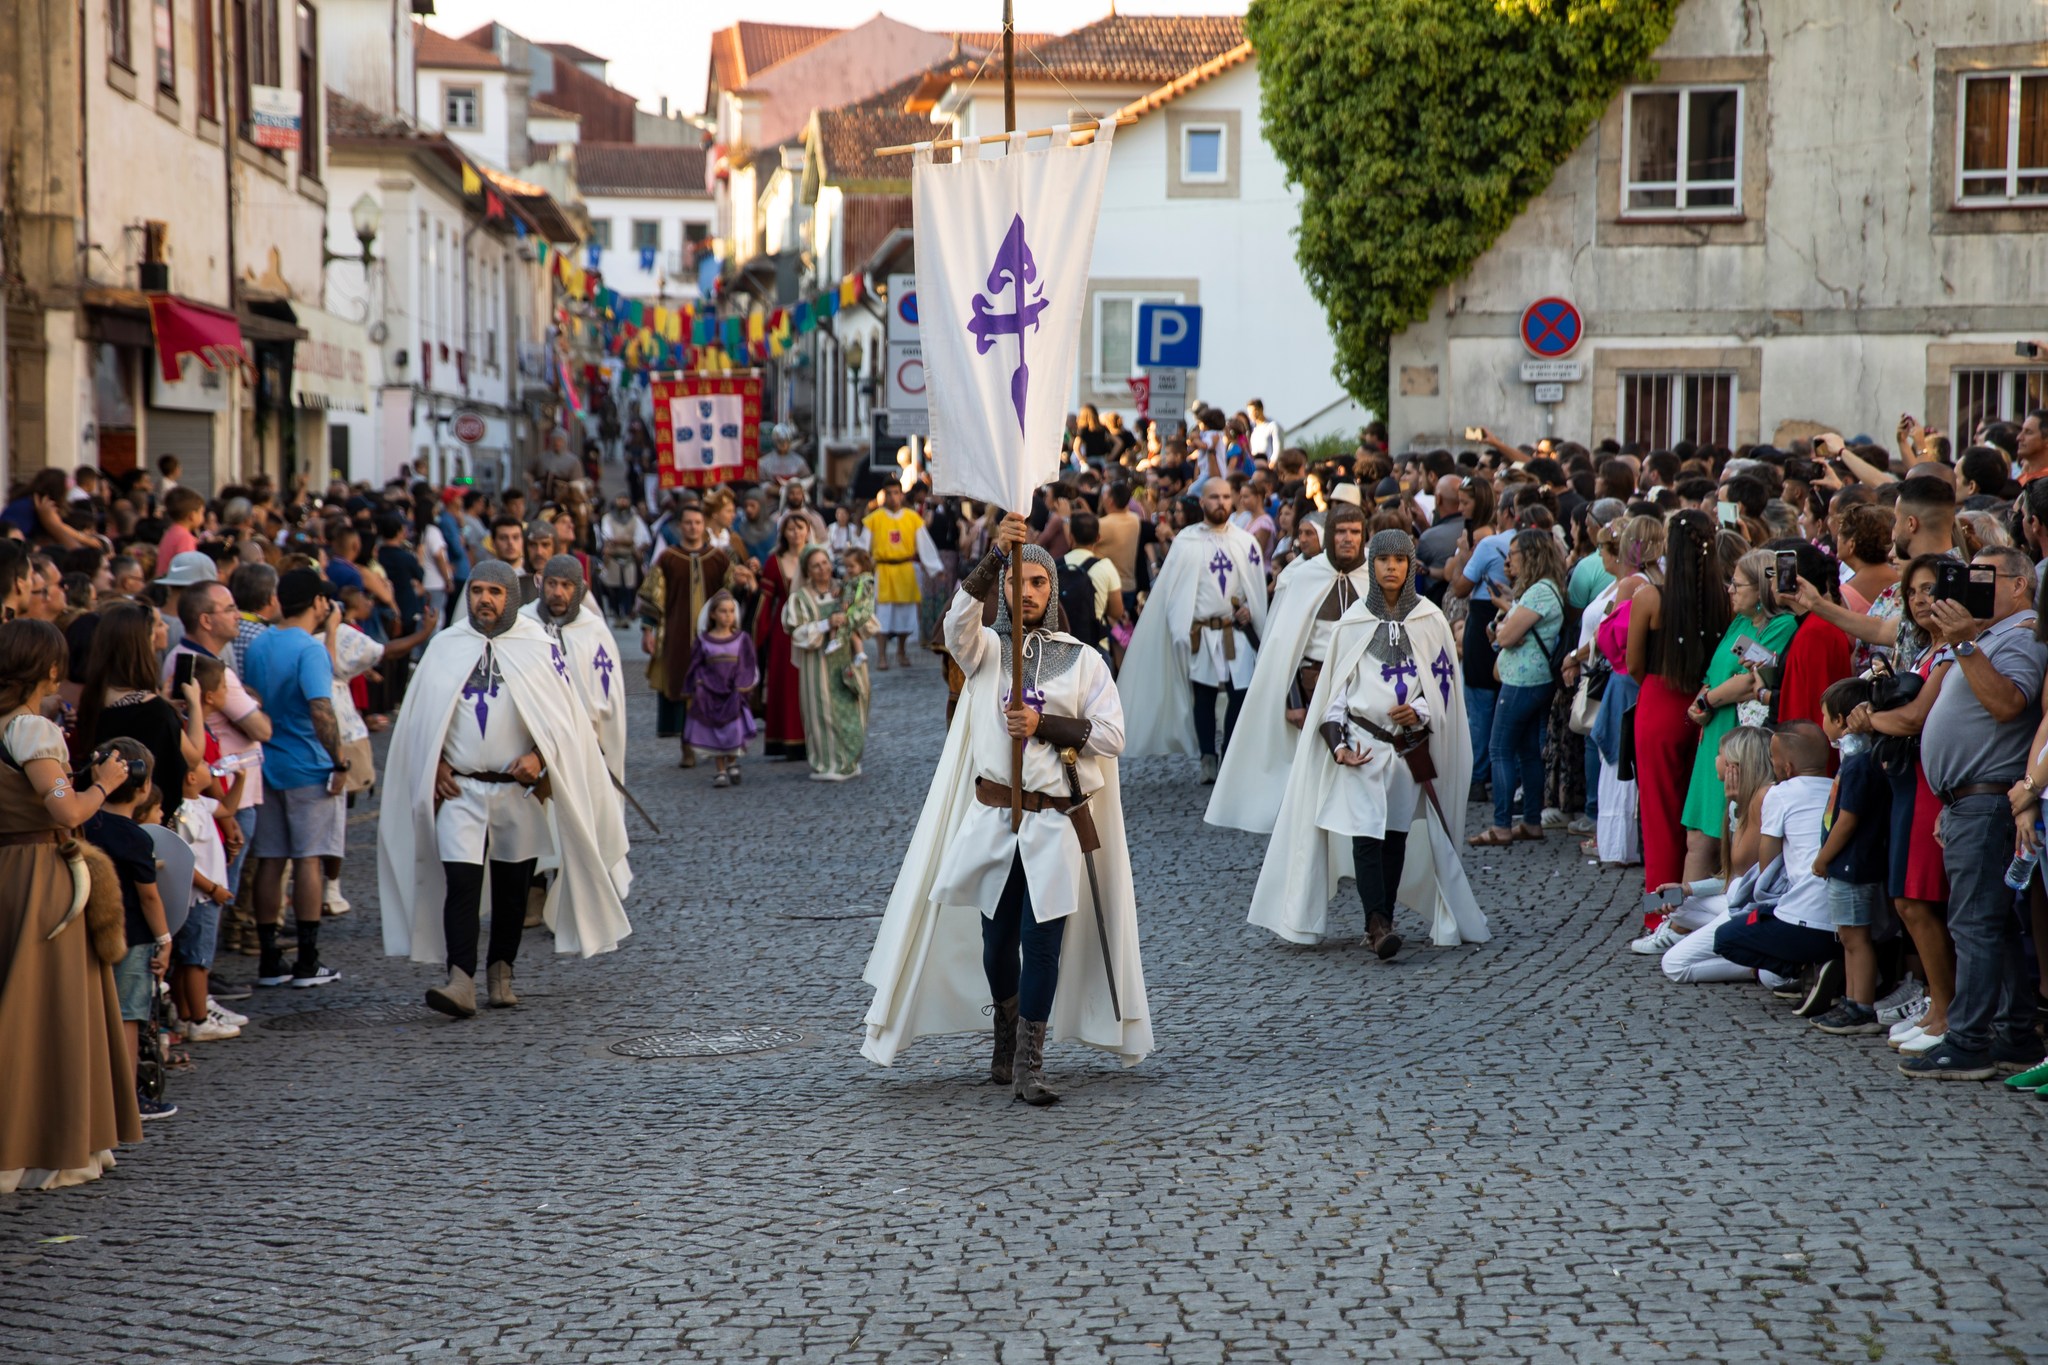 Viagem Medieval em Santa Maria da Feira espera retorno de 40 milhões de euros para a região